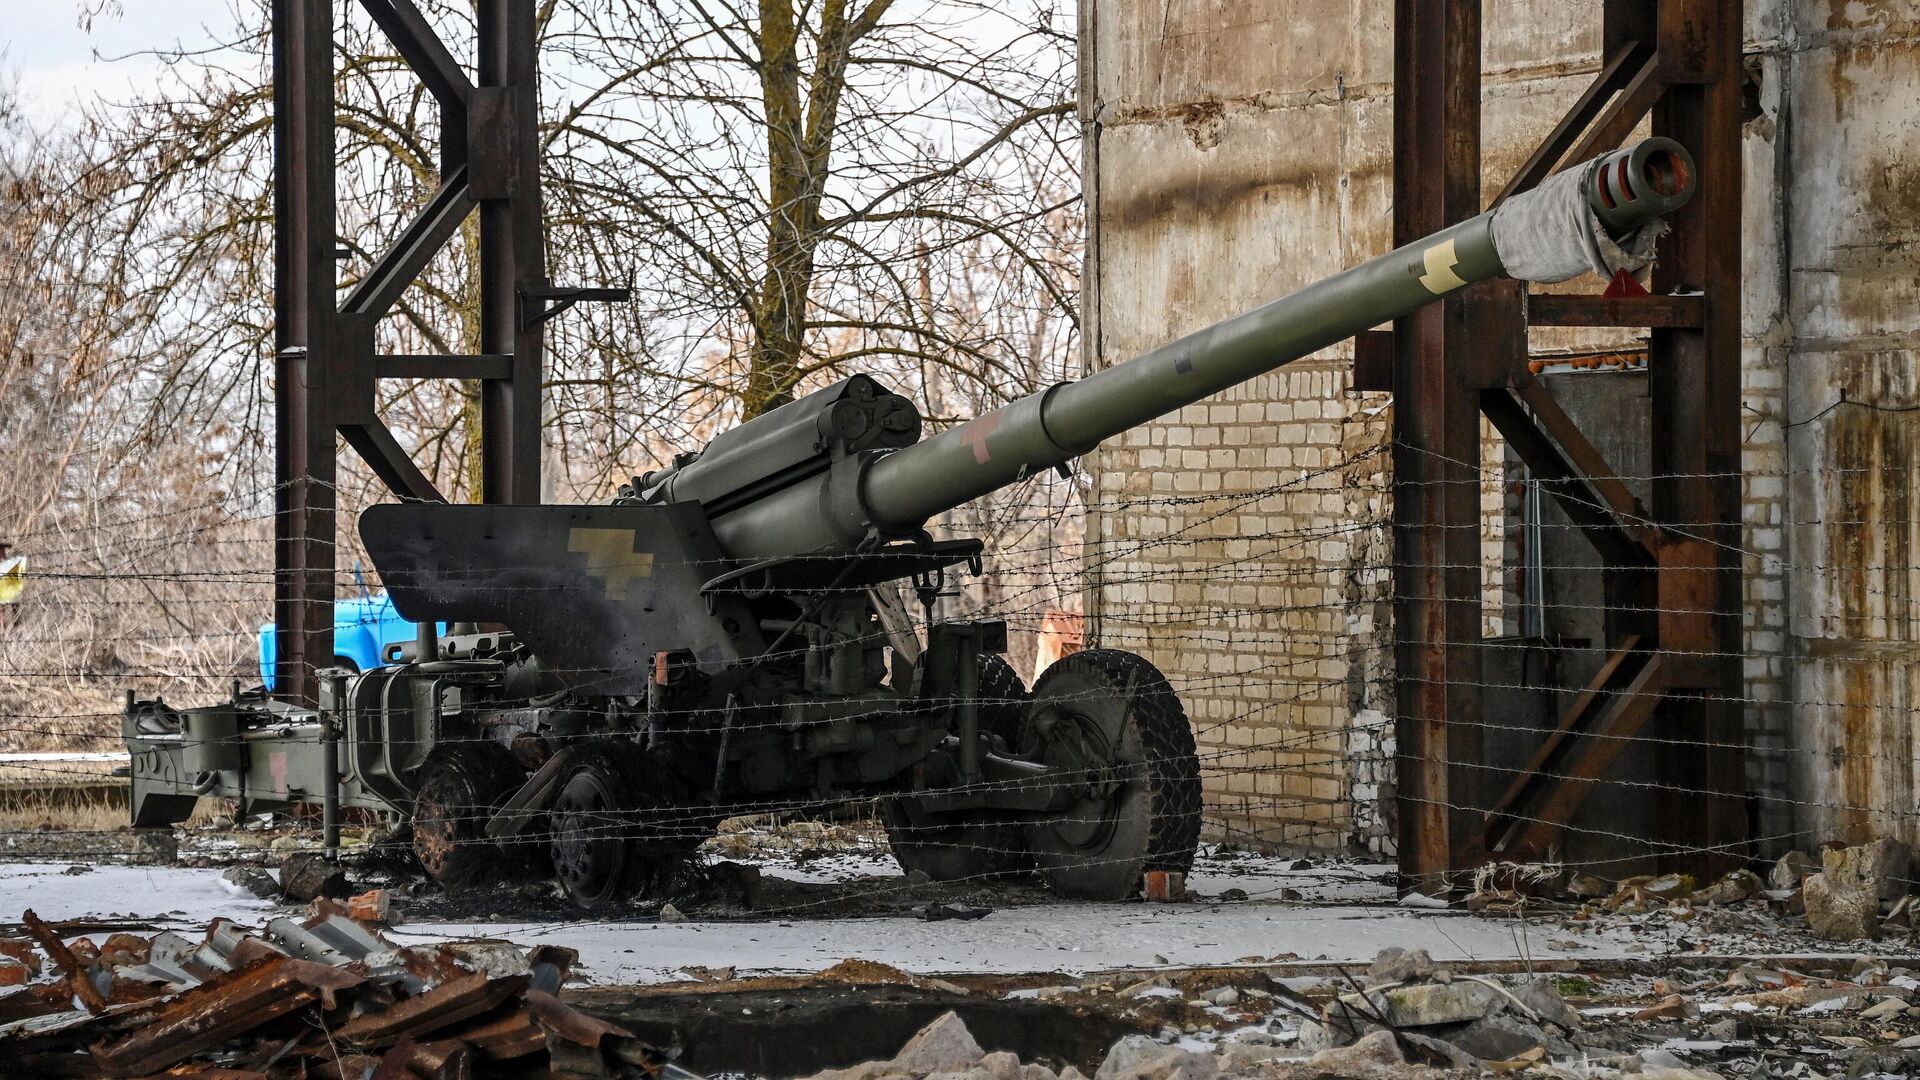 Гаубица из брошенной артиллерийской части Вооруженных сил Украины, временно расположенная на территории пункта приема металла в Бердянске - РИА Новости, 1920, 29.04.2022